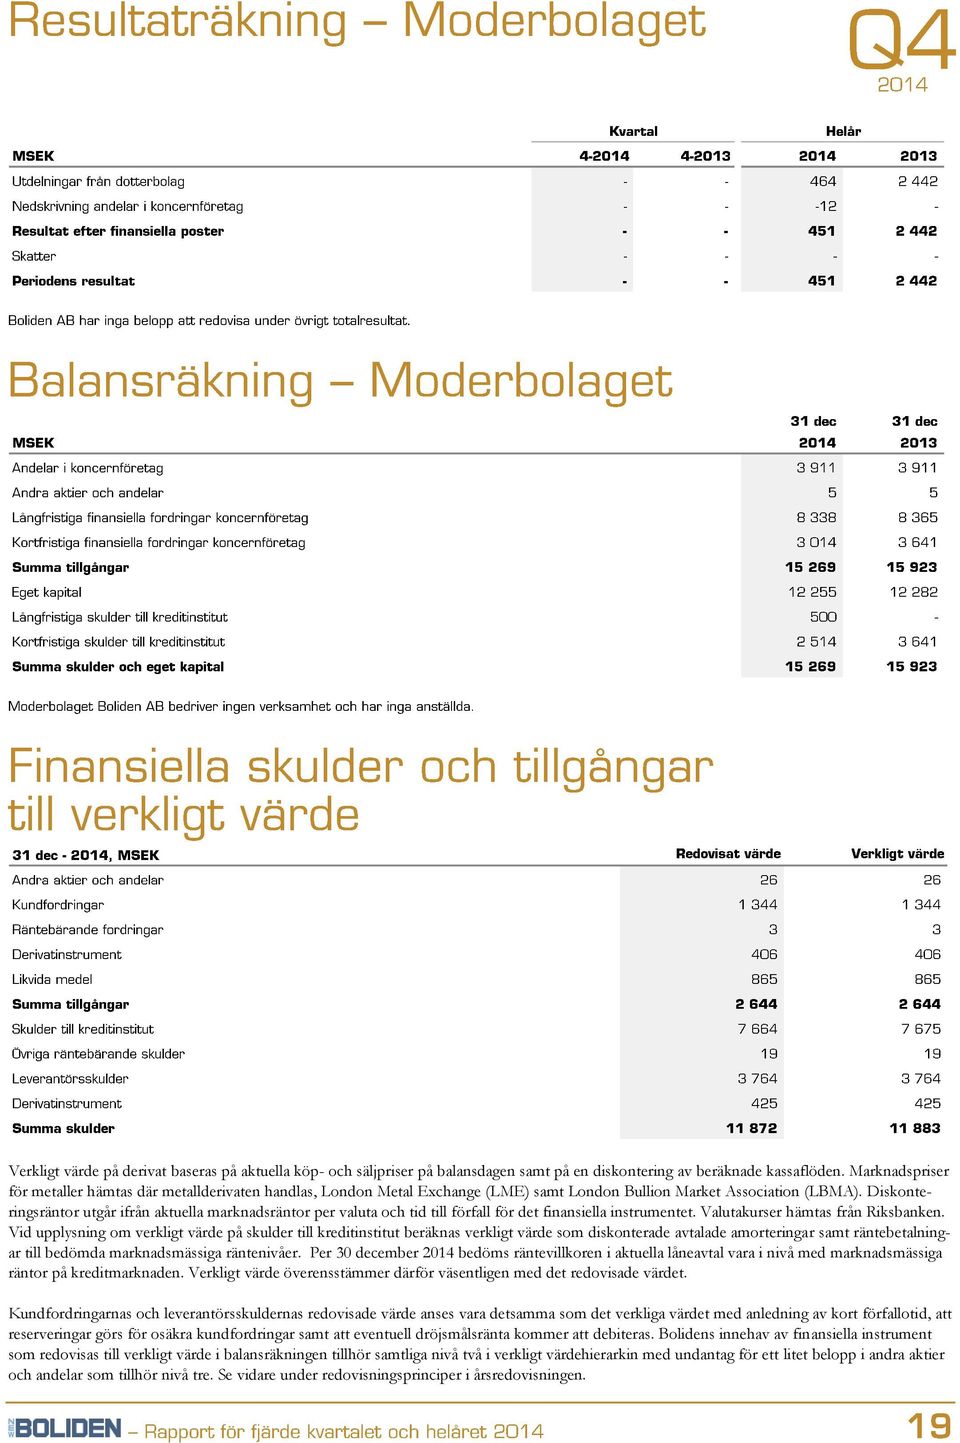 Diskonteringsräntor utgår ifrån aktuella marknadsräntor per valuta och tid till förfall för det finansiella instrumentet. Valutakurser hämtas från Riksbanken.